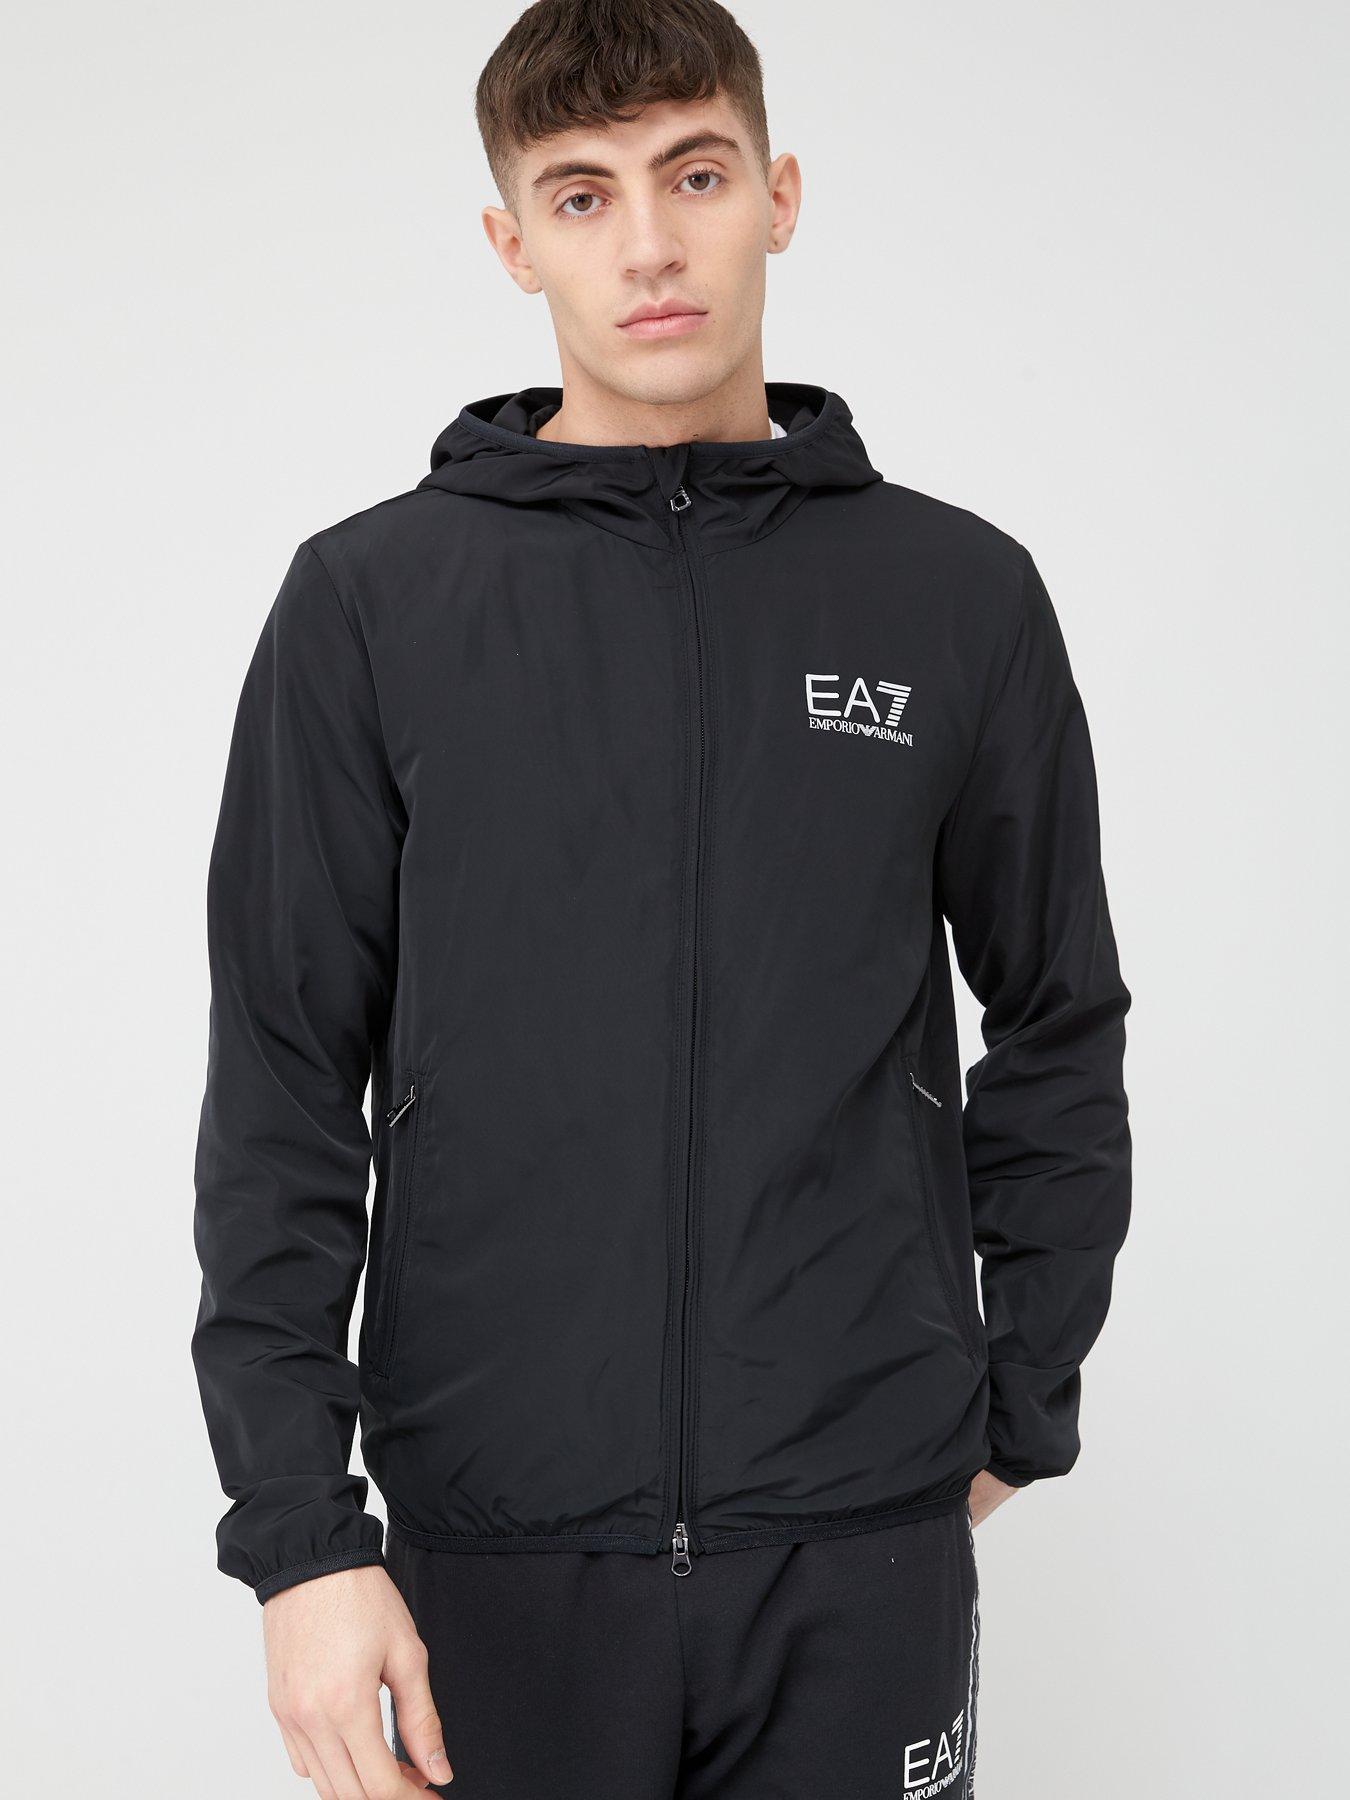 ea7 jackets mens